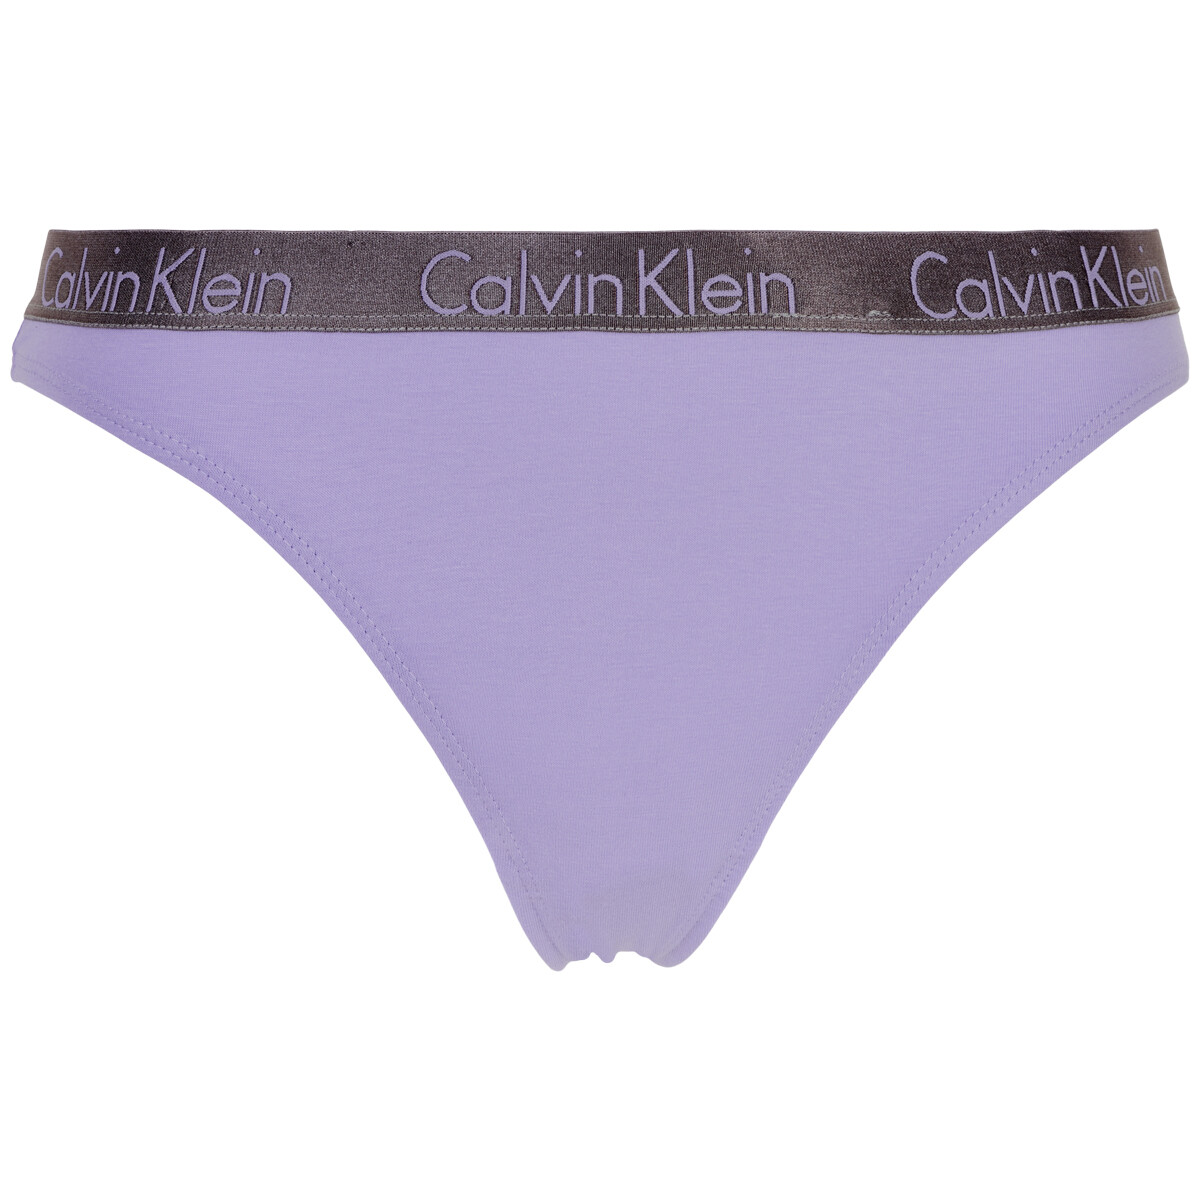 Calvin Klein Lingeri String Slip, Farbe: Vervian Lila, Größe: M, Damen von Calvin klein